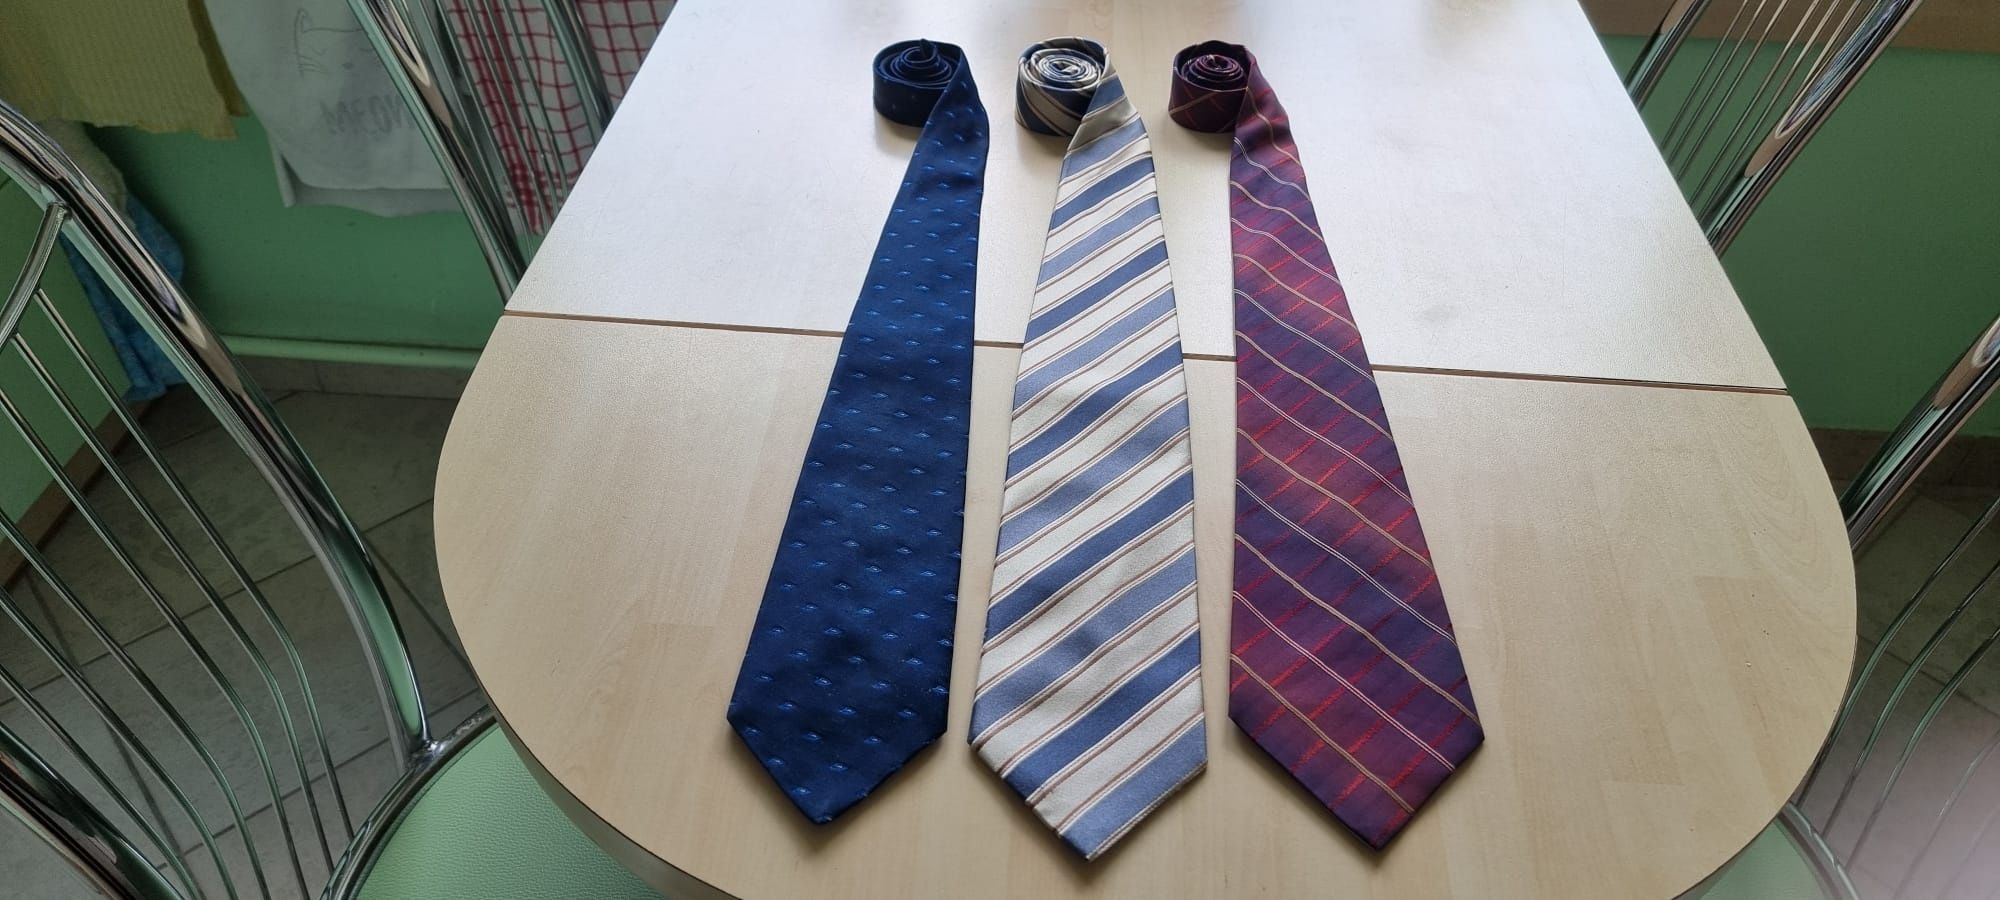 Wyprzedaż krawatów - komplet 3 sztuk